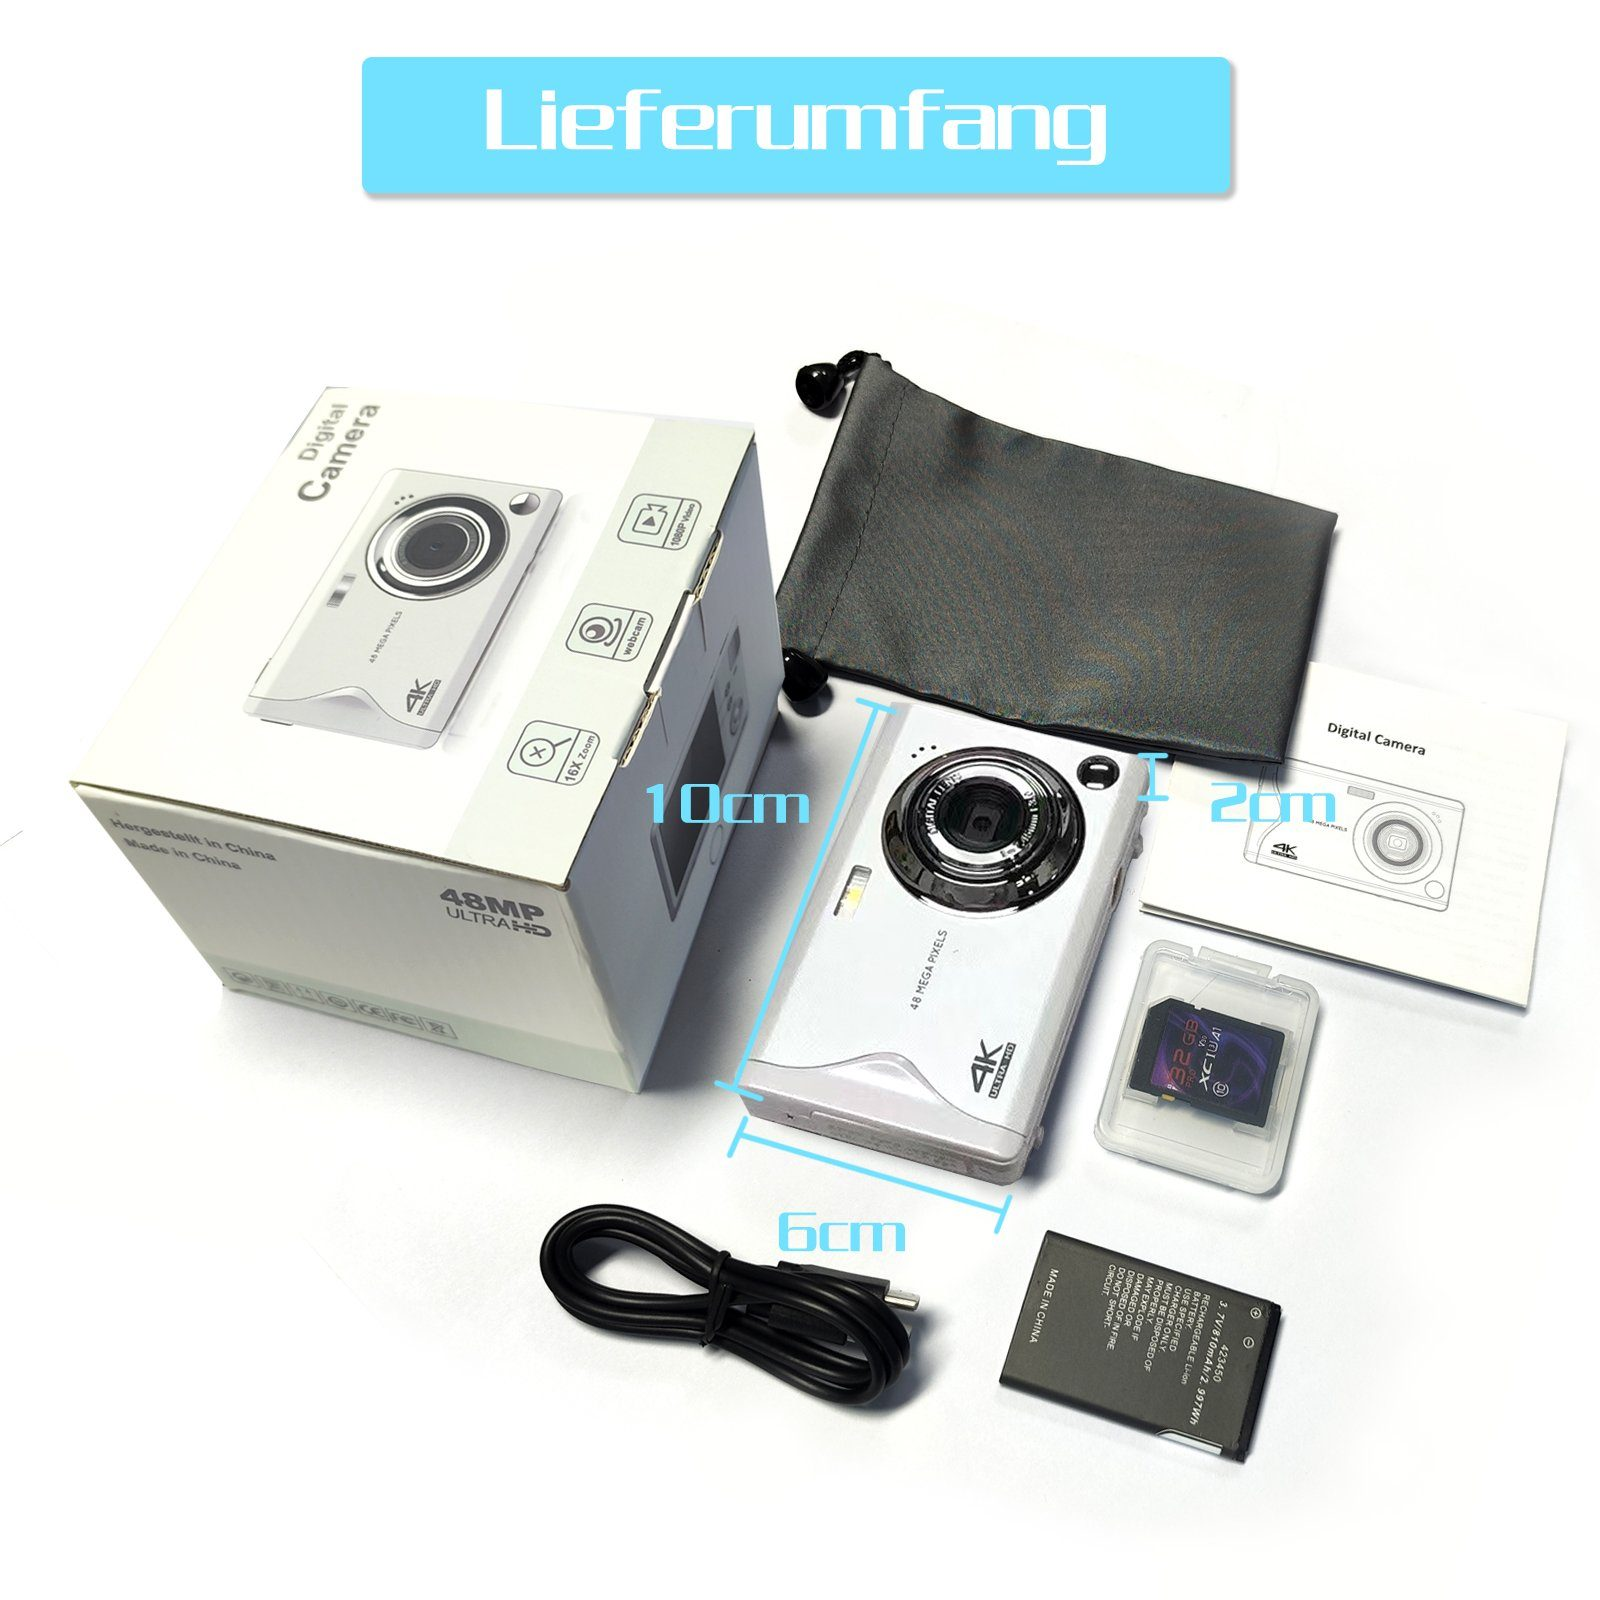 FINE LIFE PRO Karte-Kamera beiden Zoom- Mio. Kamerafunktionen Kinderkamera 16X 48 Weiß, Pixel opt. Kompaktkamera 4K-Aufruf48 mit MP